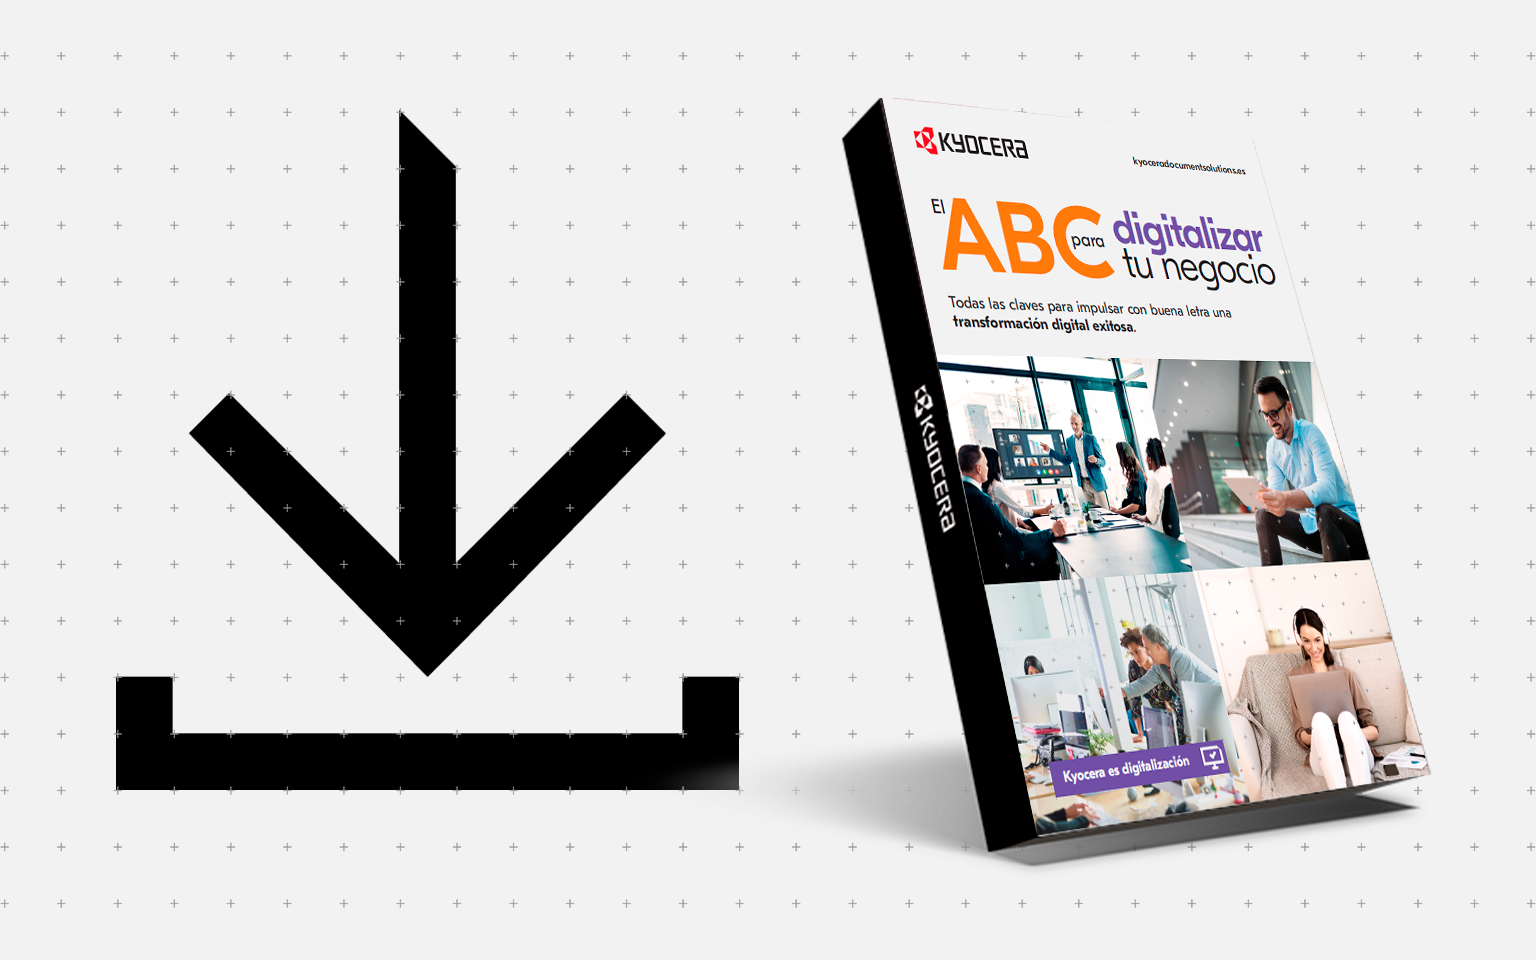 El ABC para digitalizar tu negocio